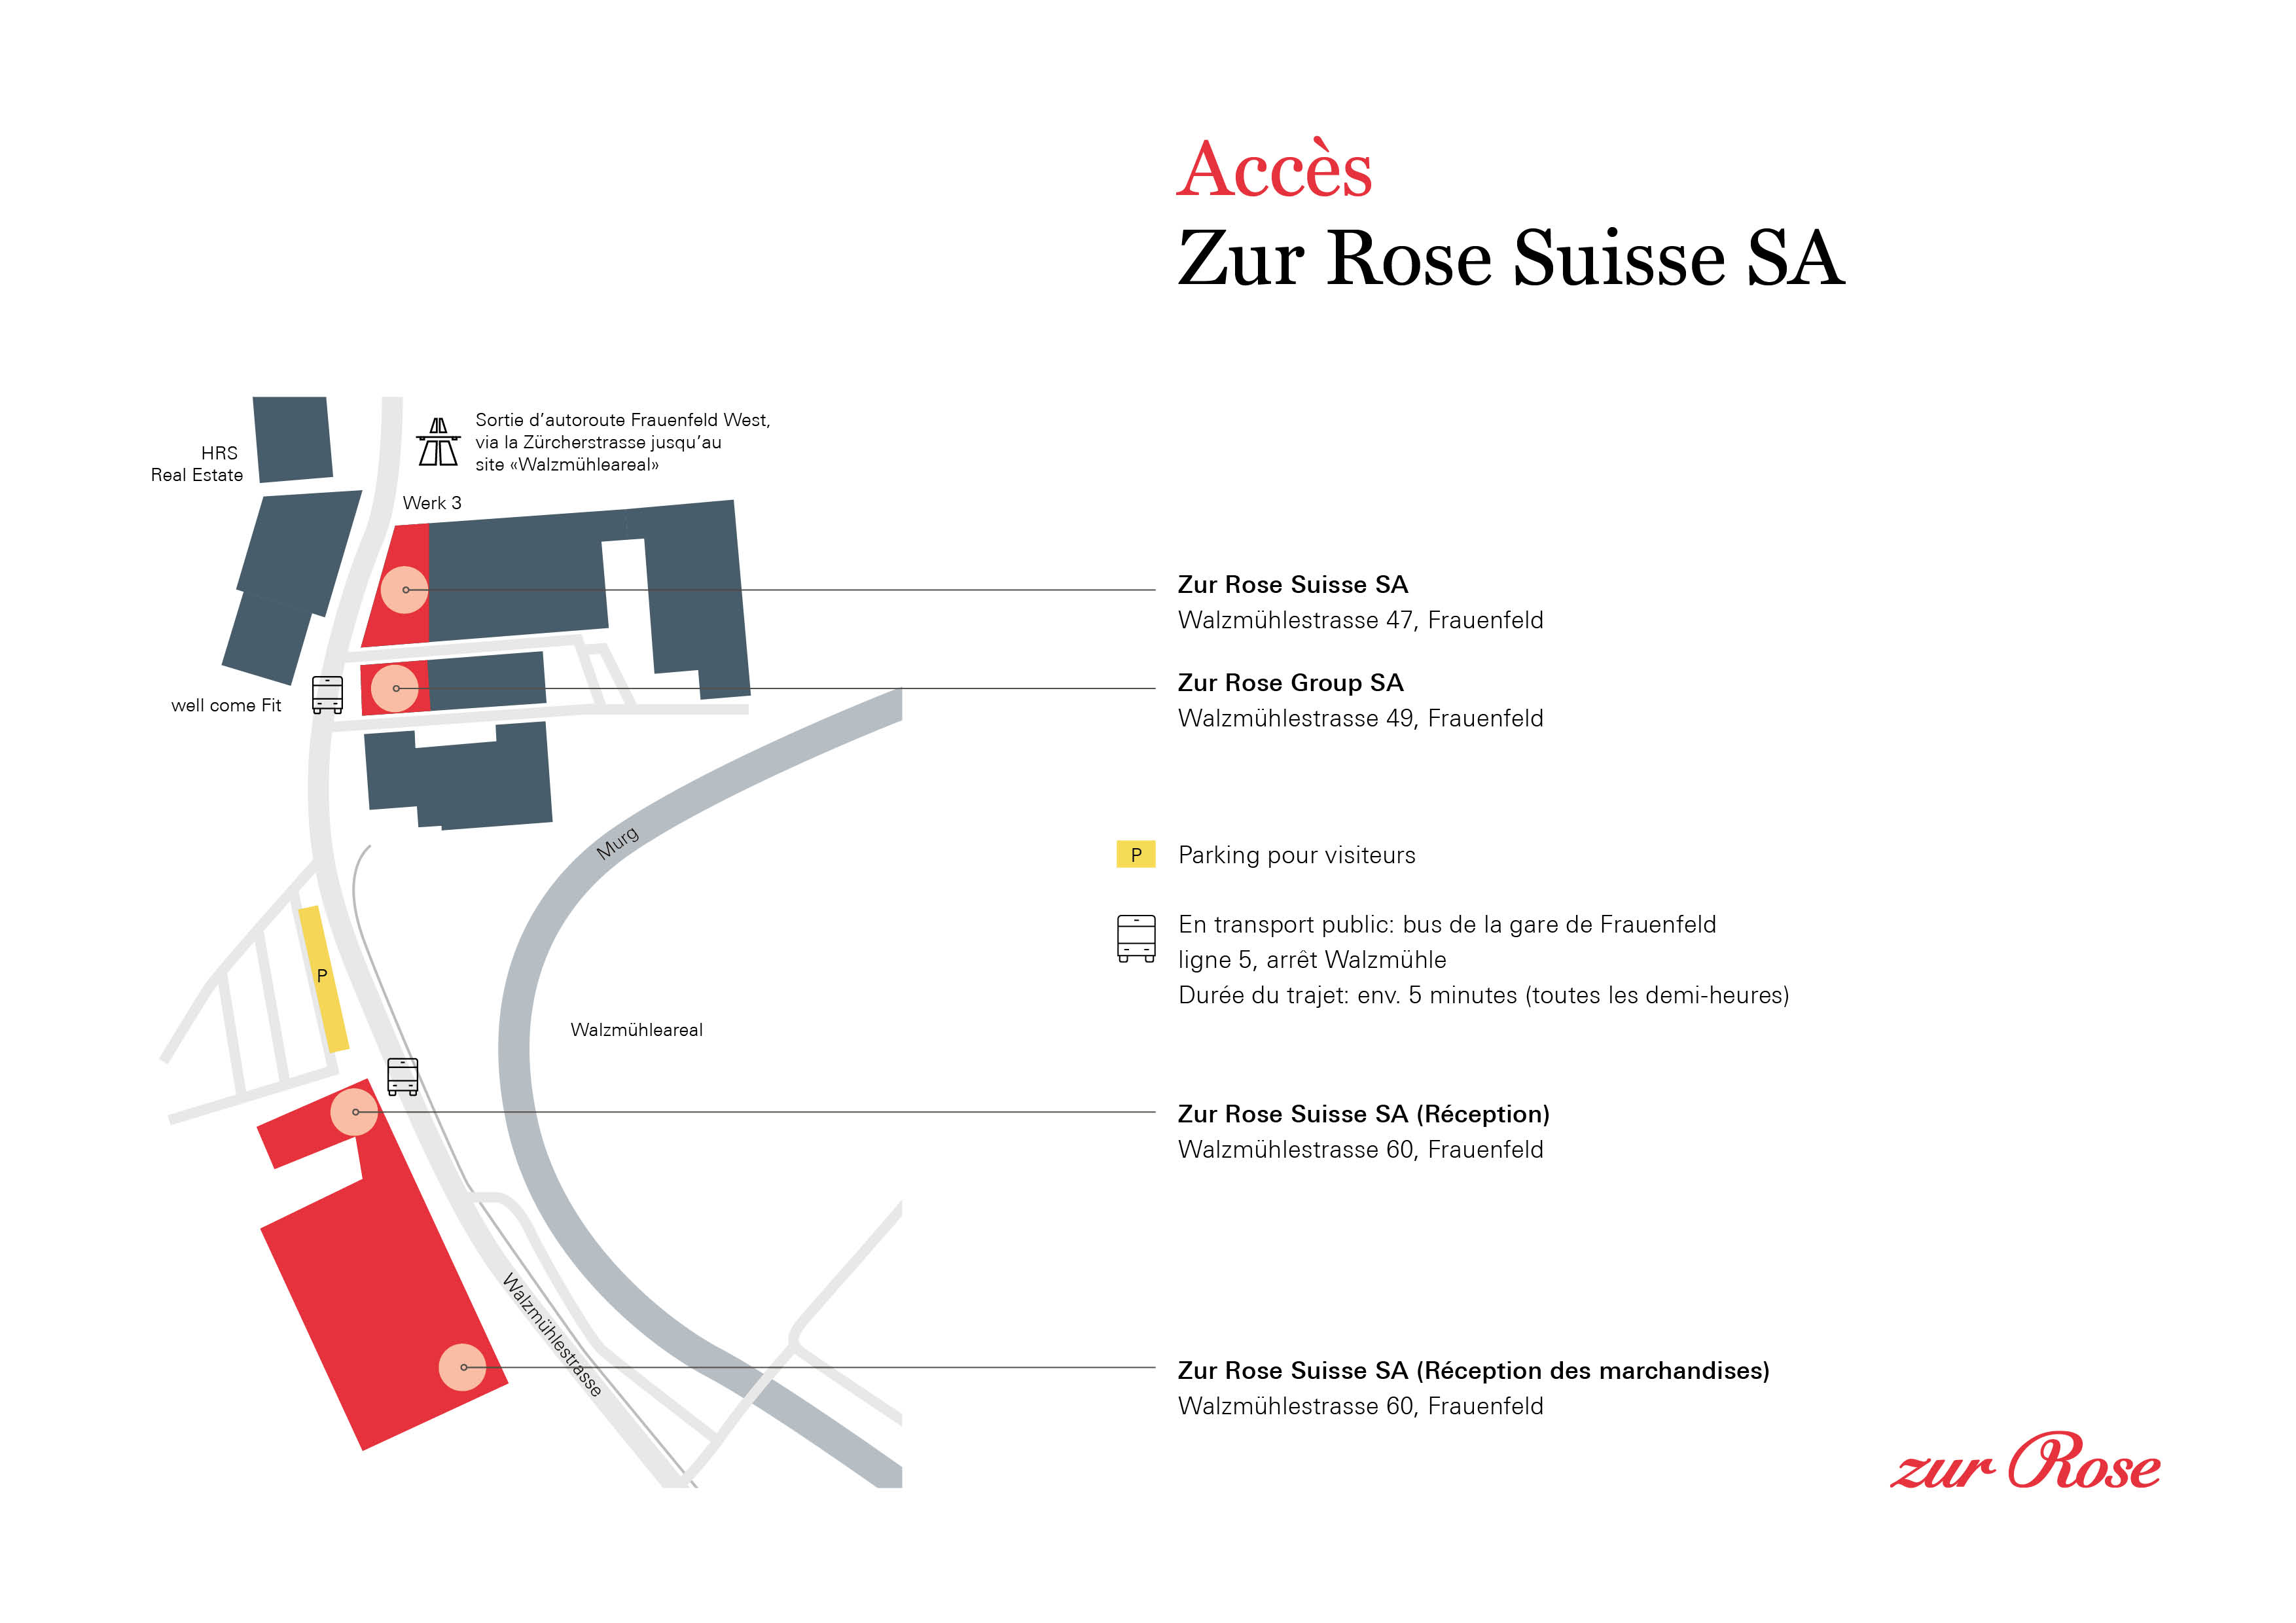 Accès Zur Rose Suisse AG